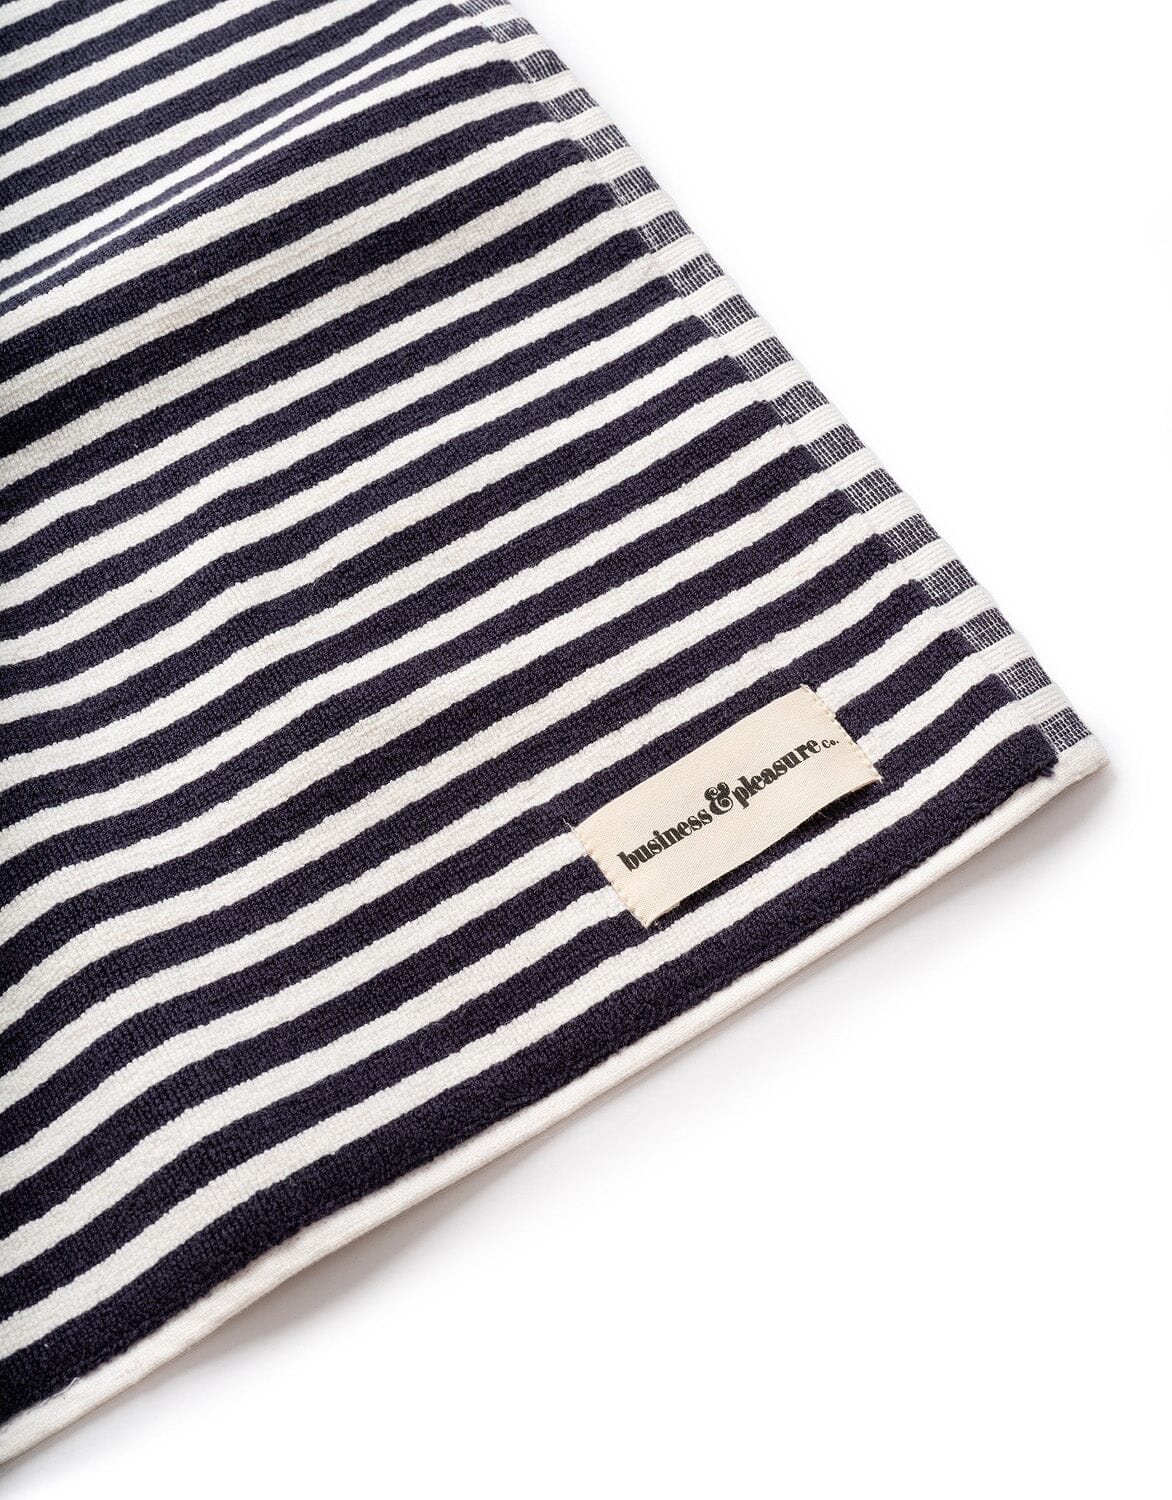 The Bath Mat - Lauren's Navy Stripe